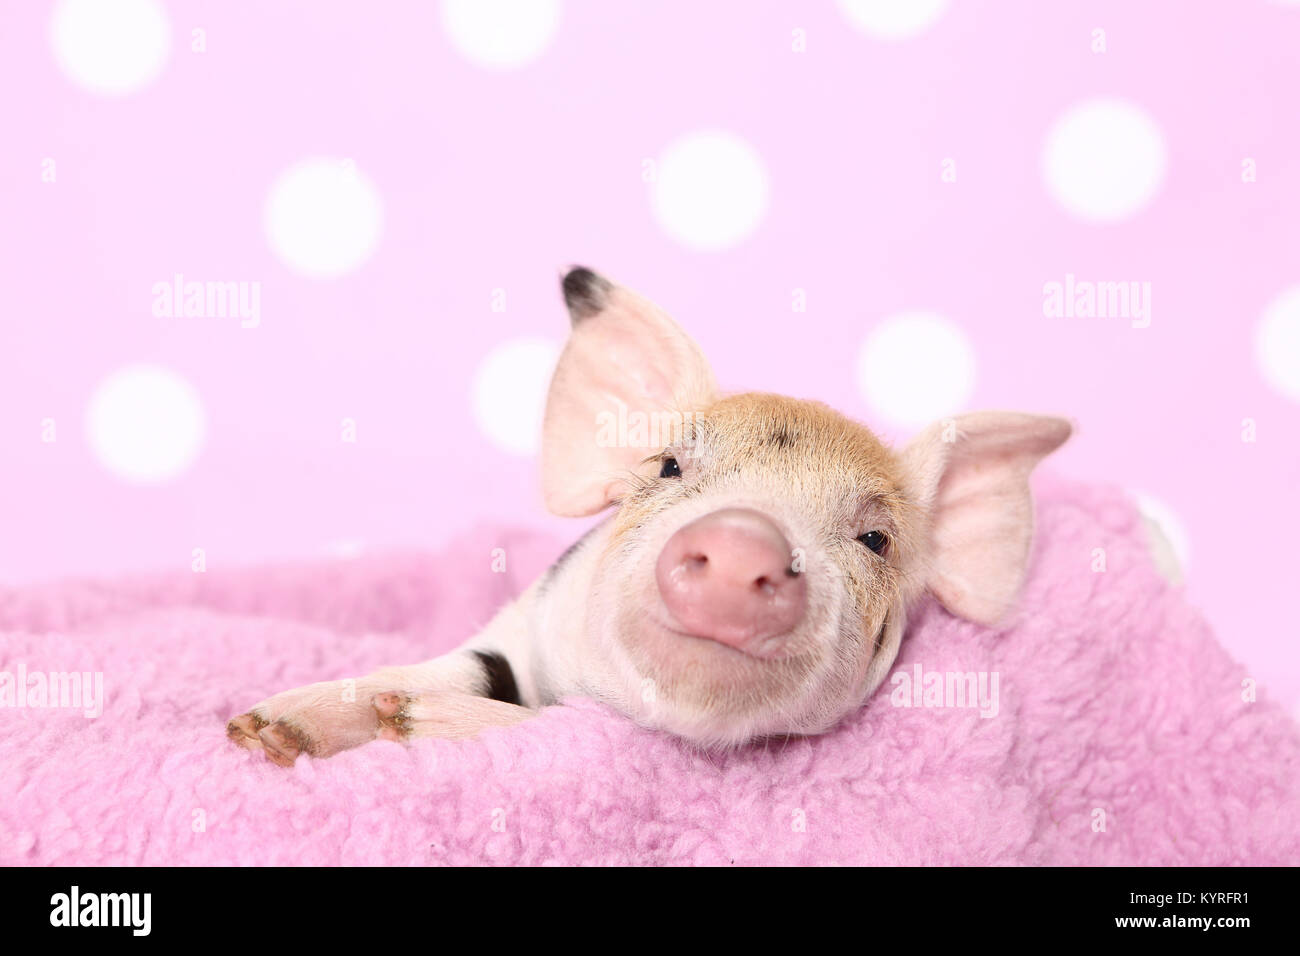 Porc domestique, Turopolje x ?. Porcinet (2 semaines) est posé sur une couverture rose. Studio photo sur un fond rose à pois. Allemagne Banque D'Images